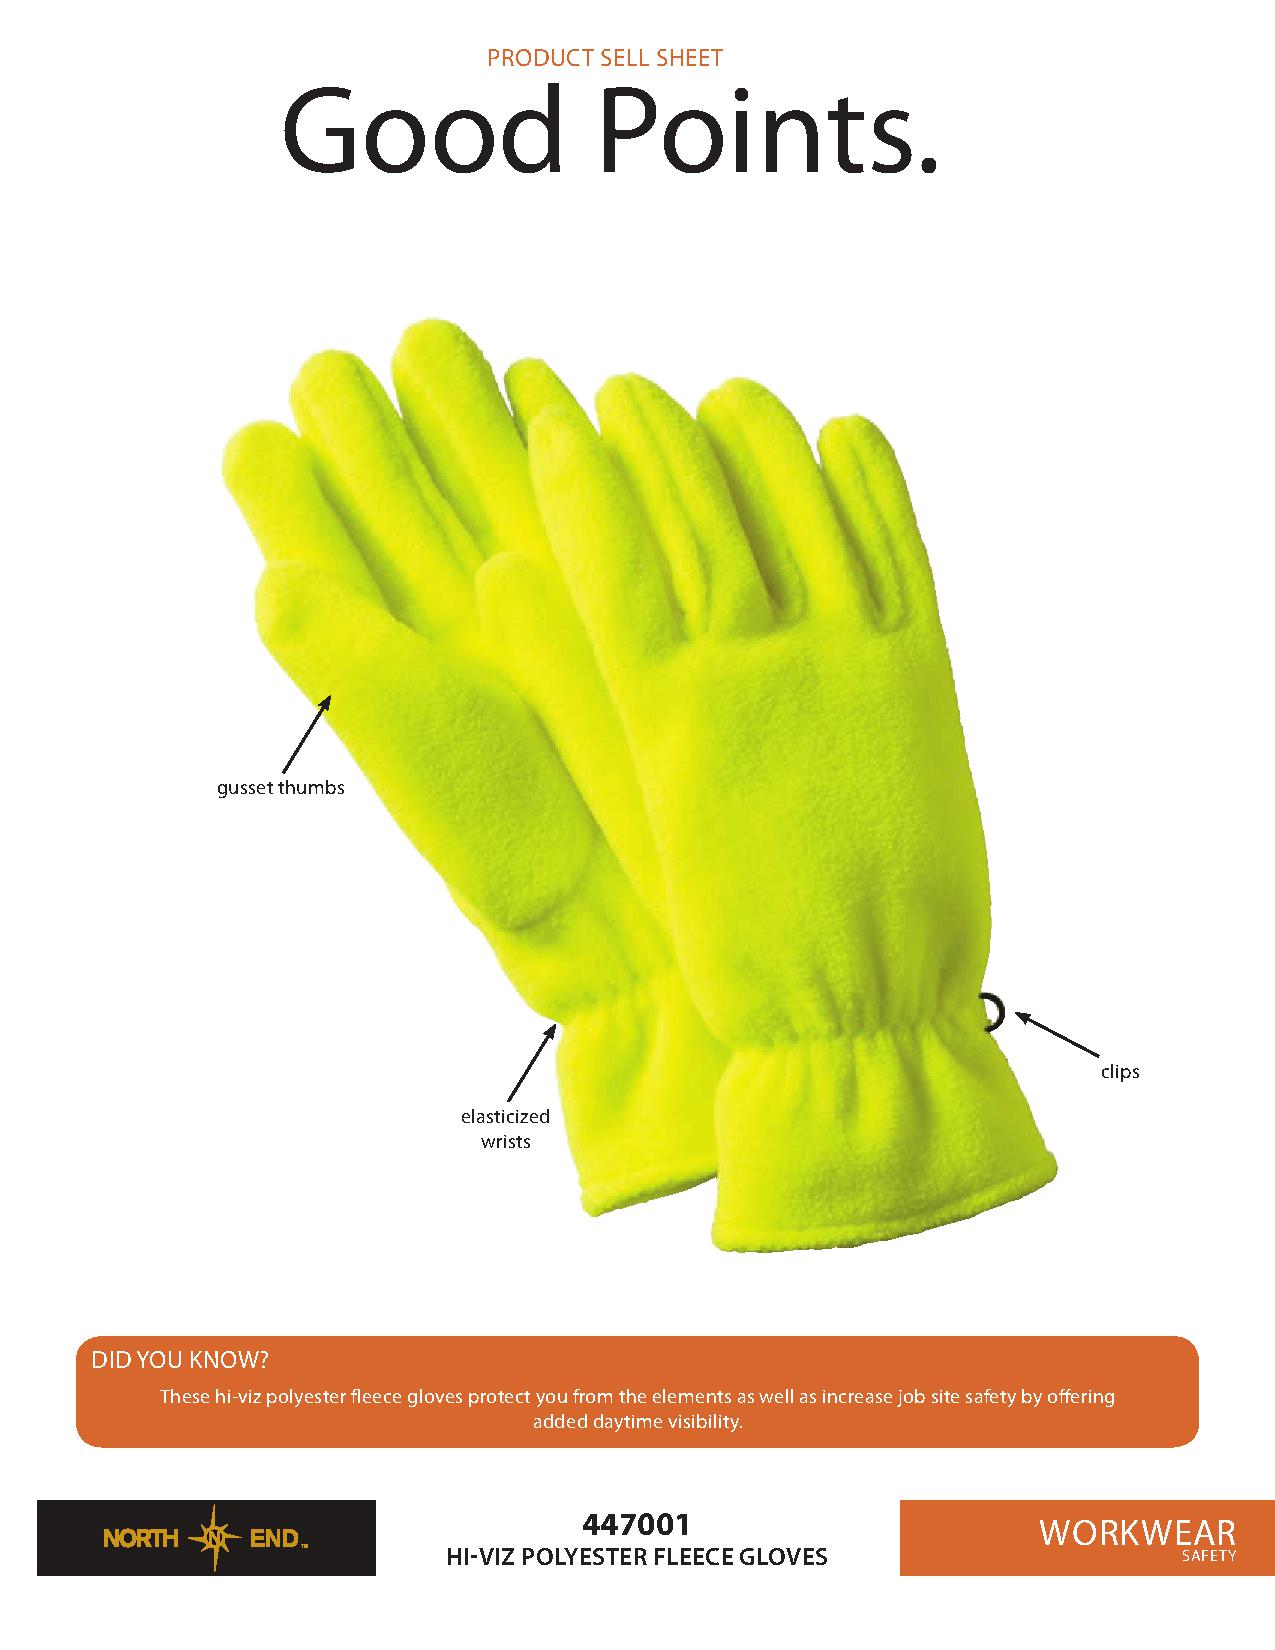 Ash City Poly Fleece 447001 - Hi-Viz Polyester Fleece Gloves